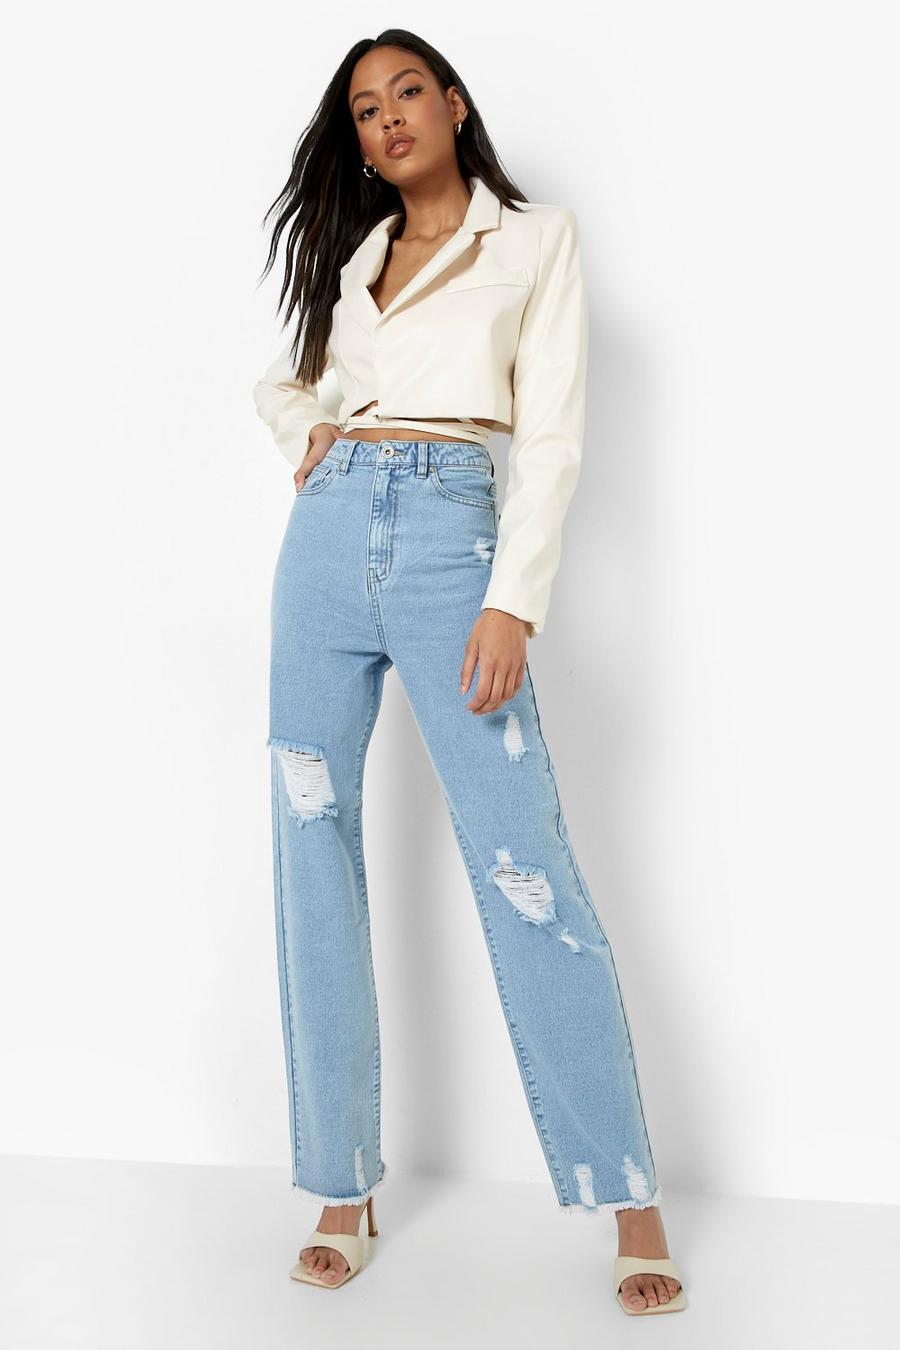 דהוי קלות ג'ינס אסיד ווש בגזרת בויפרנד עם קרעים, לנשים גבוהות image number 1